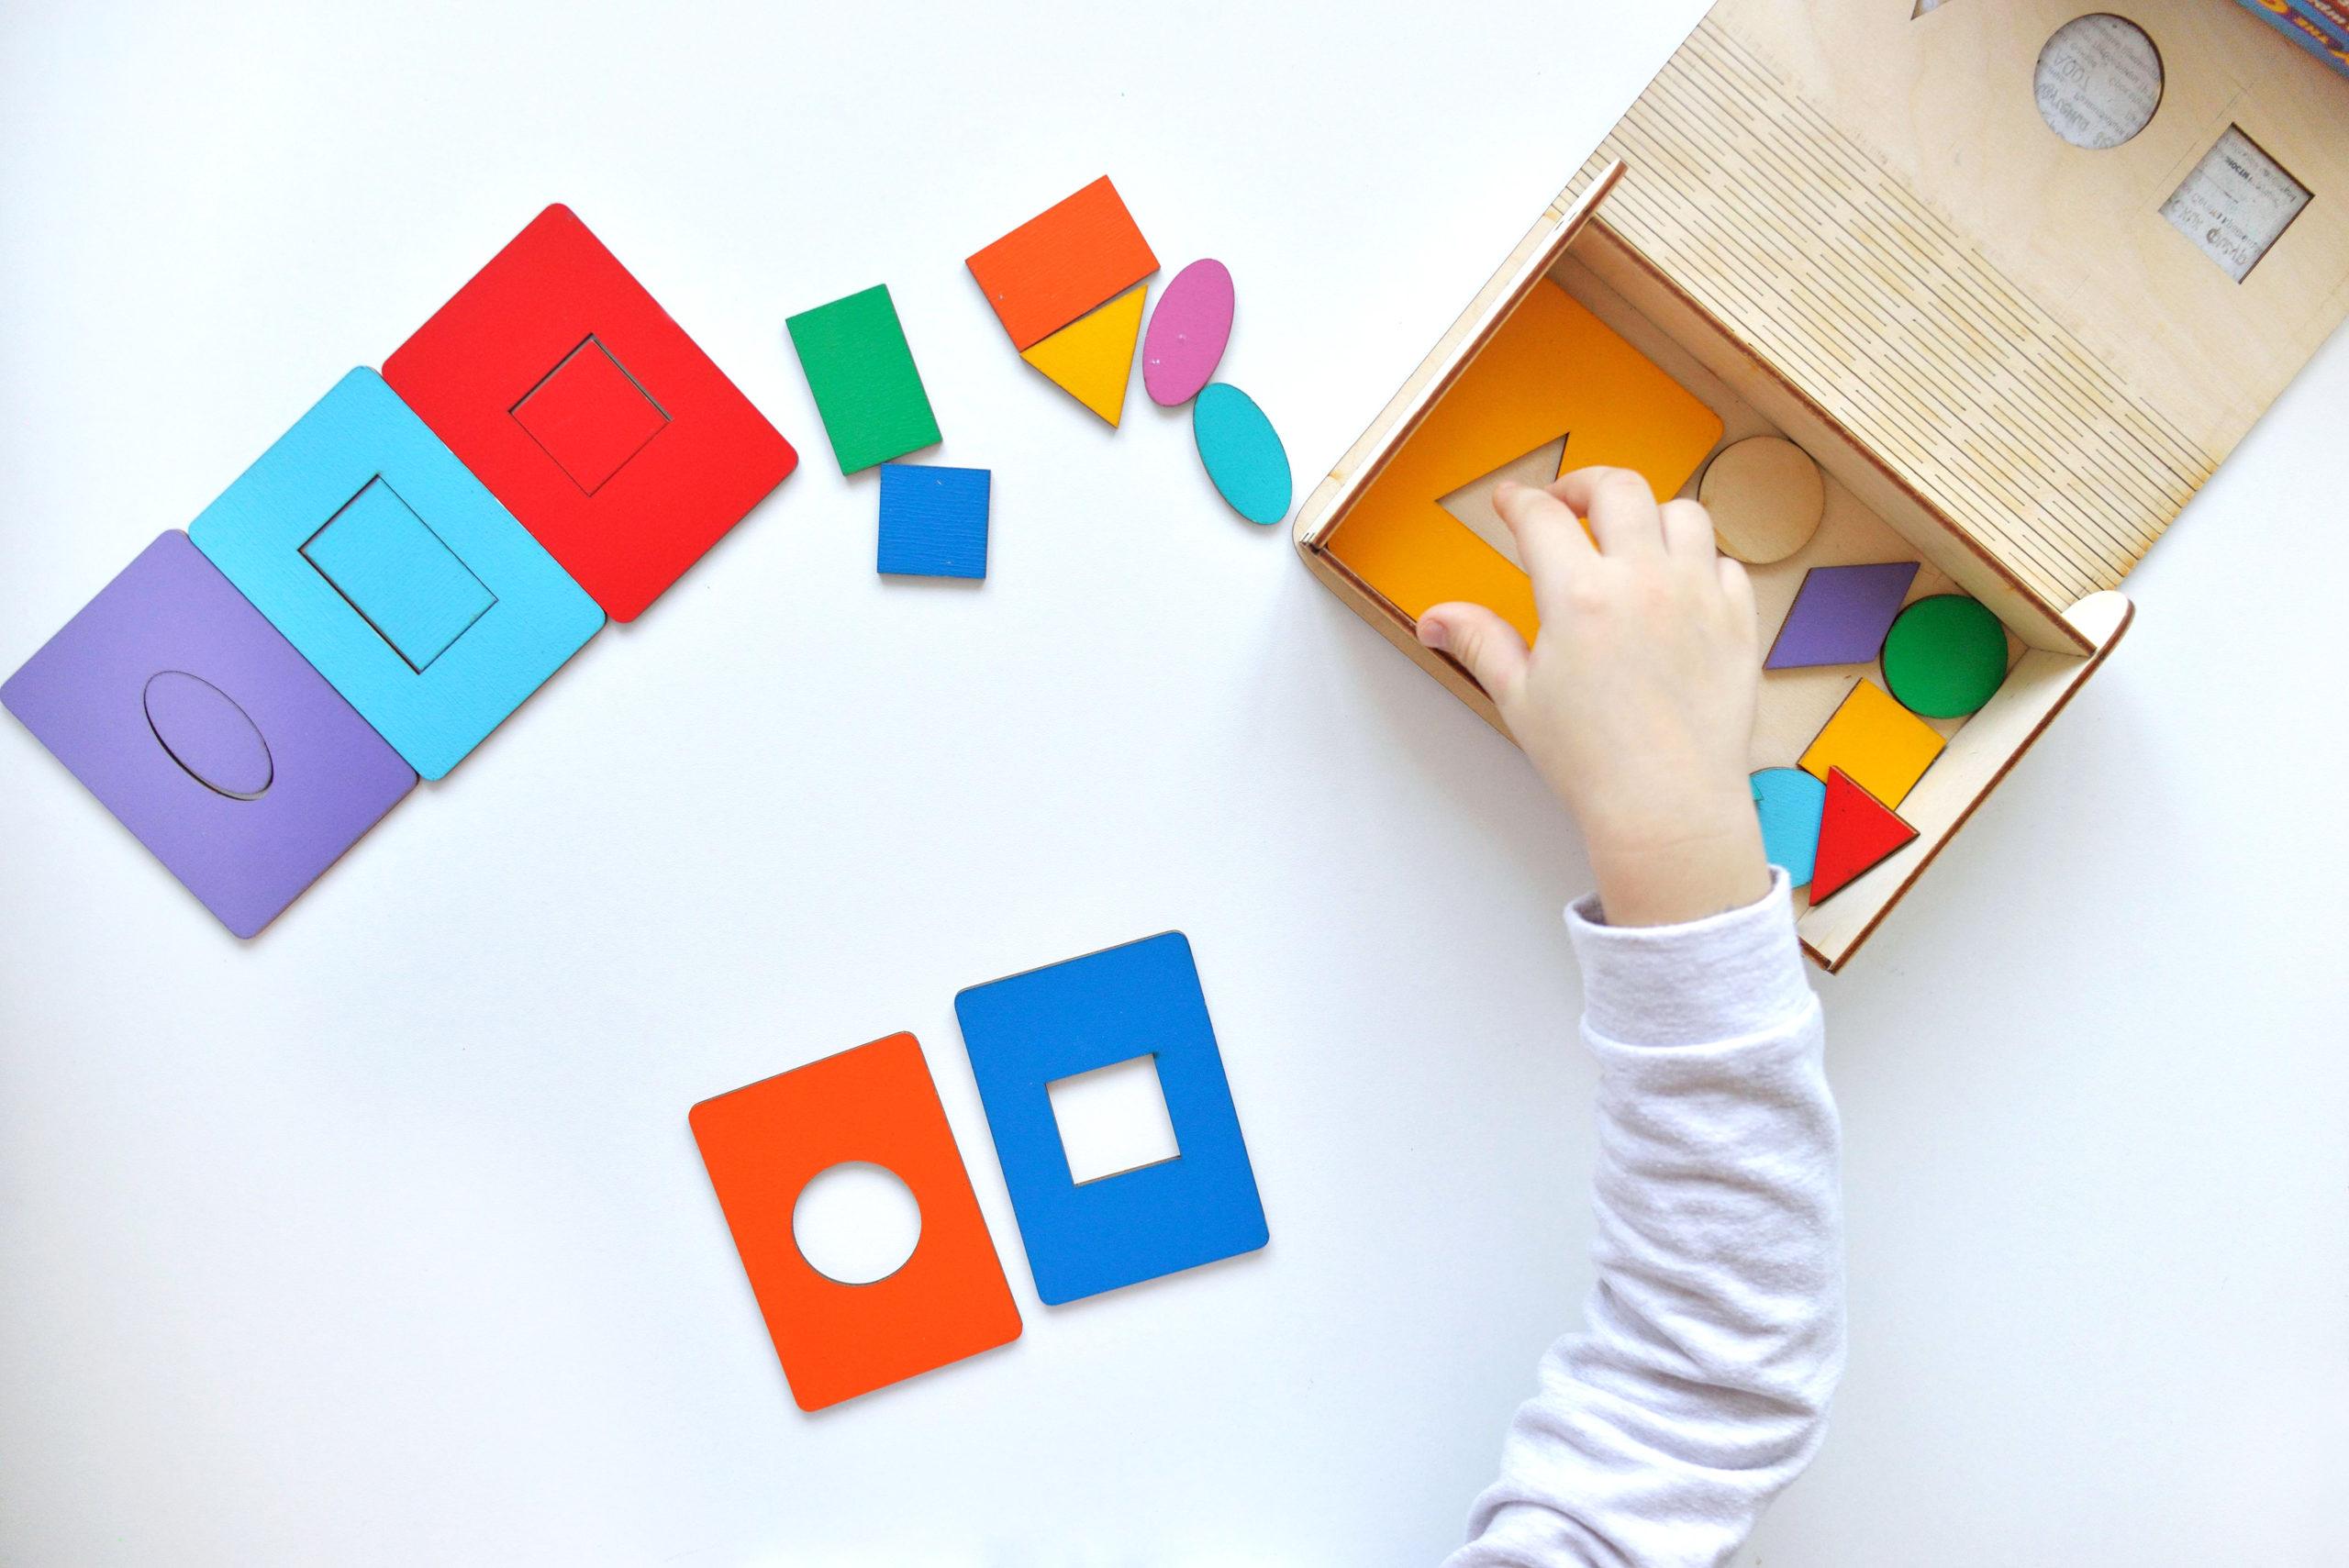 Comment sont fabriquer des jeux Montessori ? - Paradis du jouet